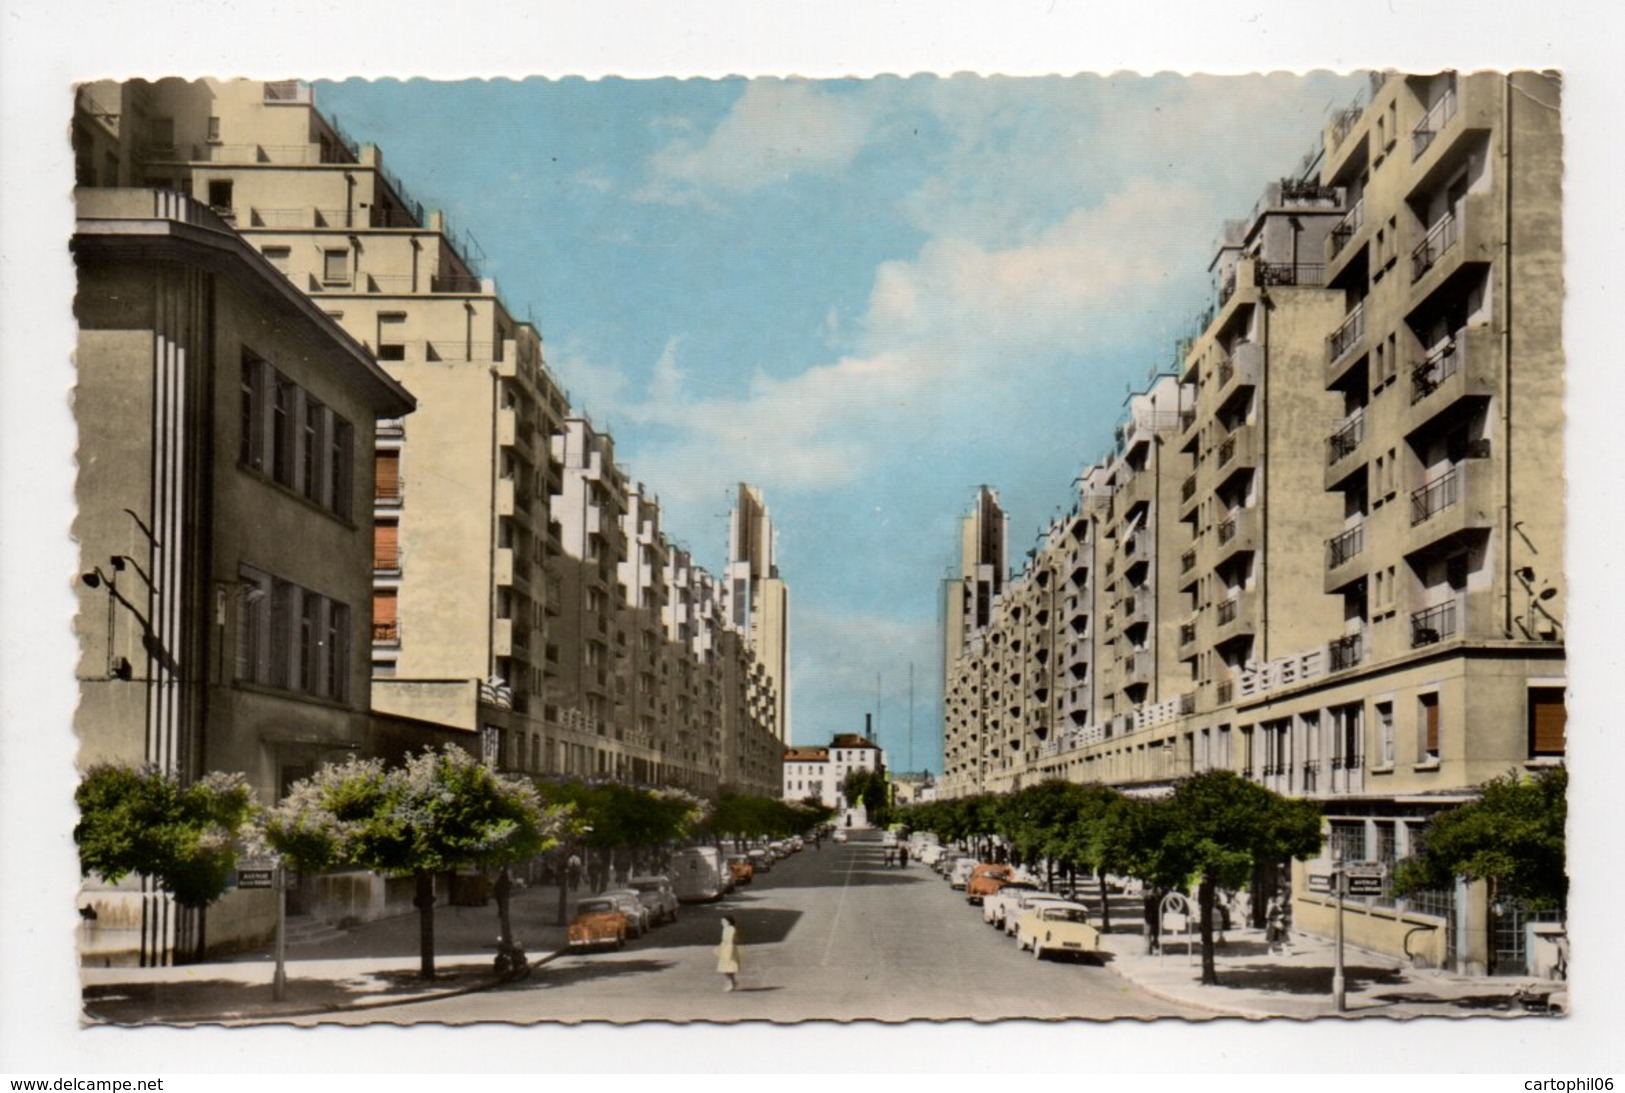 - CPSM LYON-VILLEURBANNE (69) - Avenue Henri Barbusse 1964 - Editions FERRER 1027 - - Villeurbanne